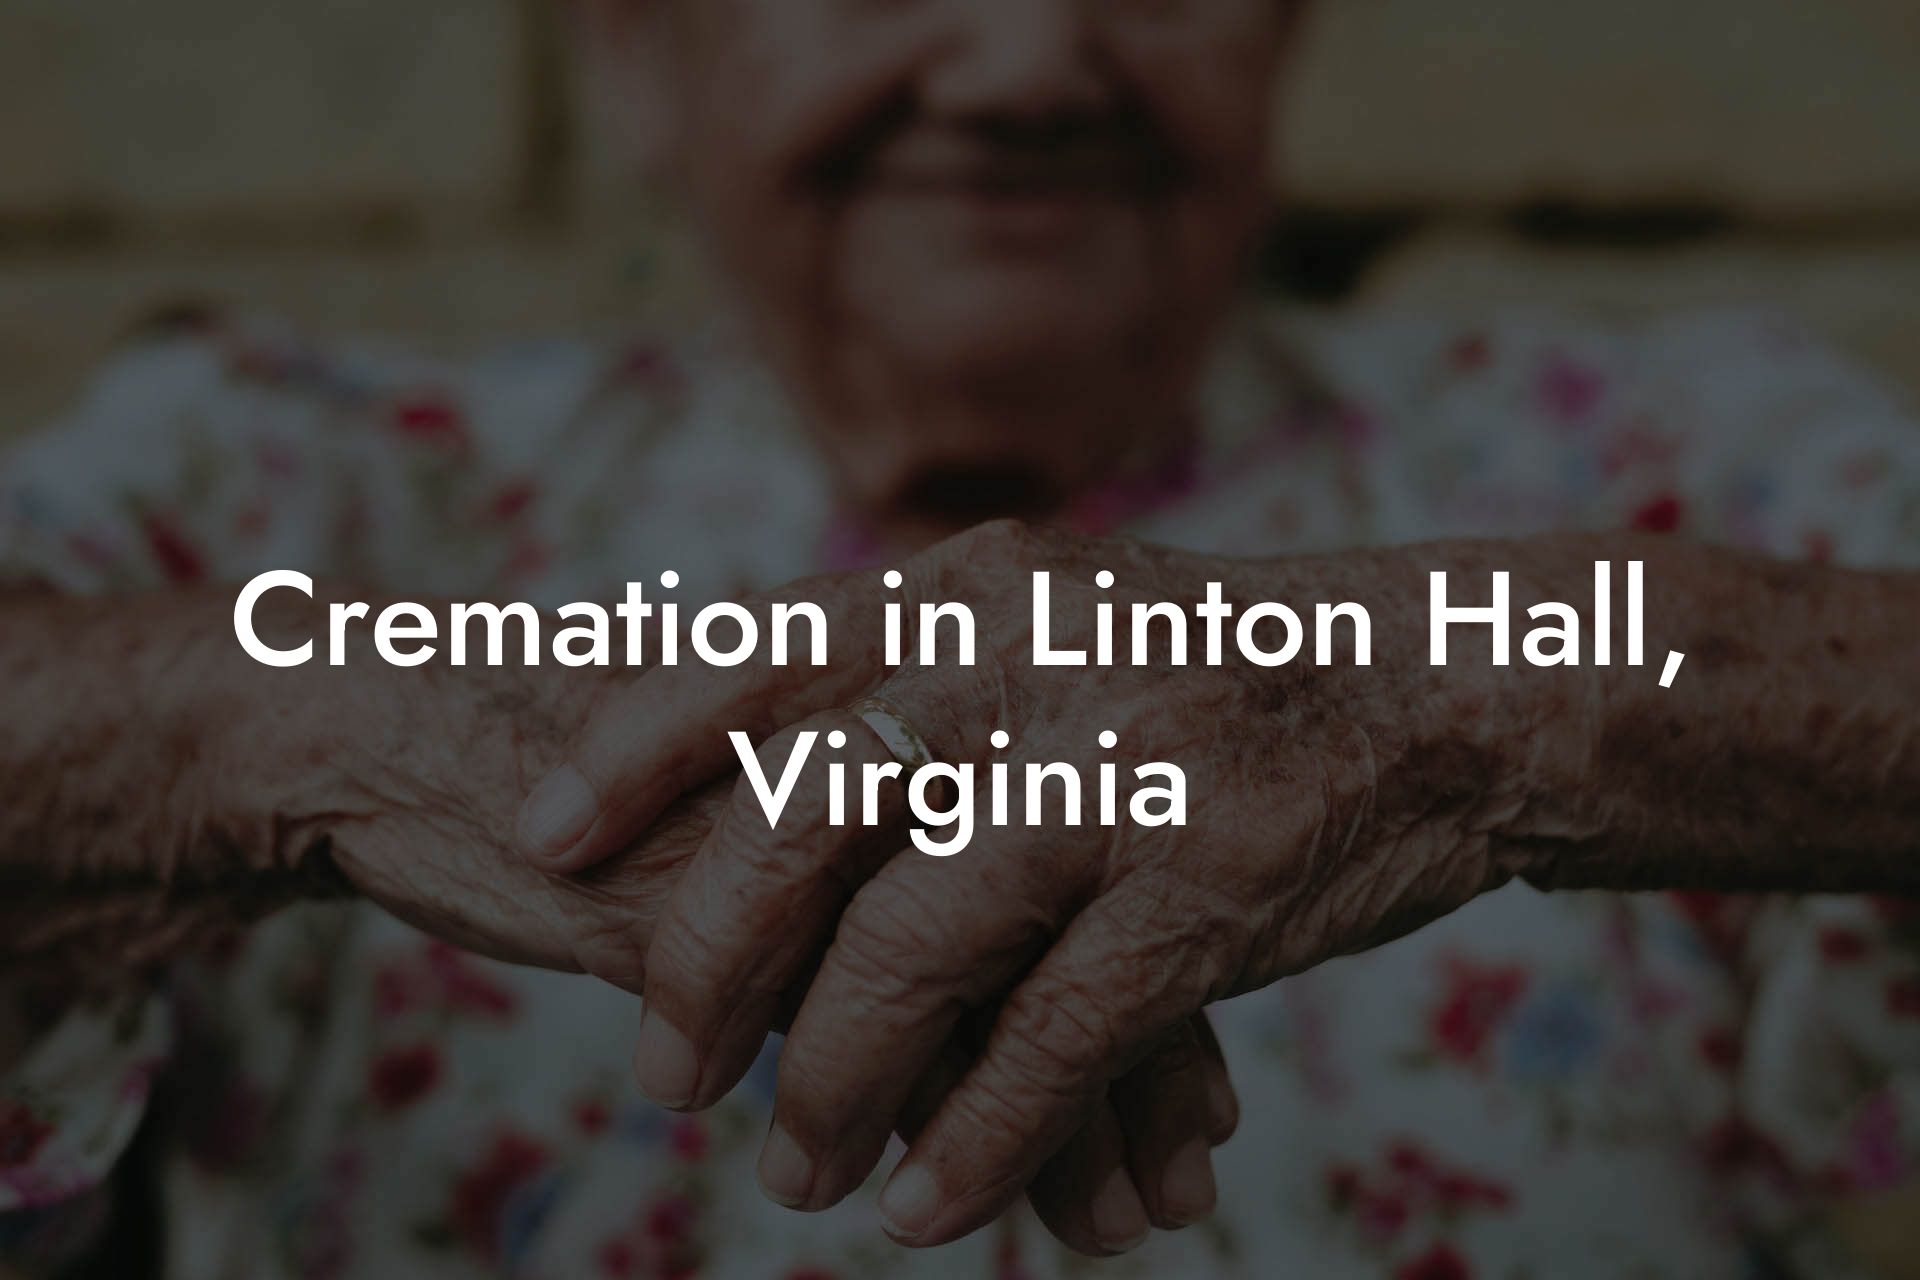 Cremation in Linton Hall, Virginia